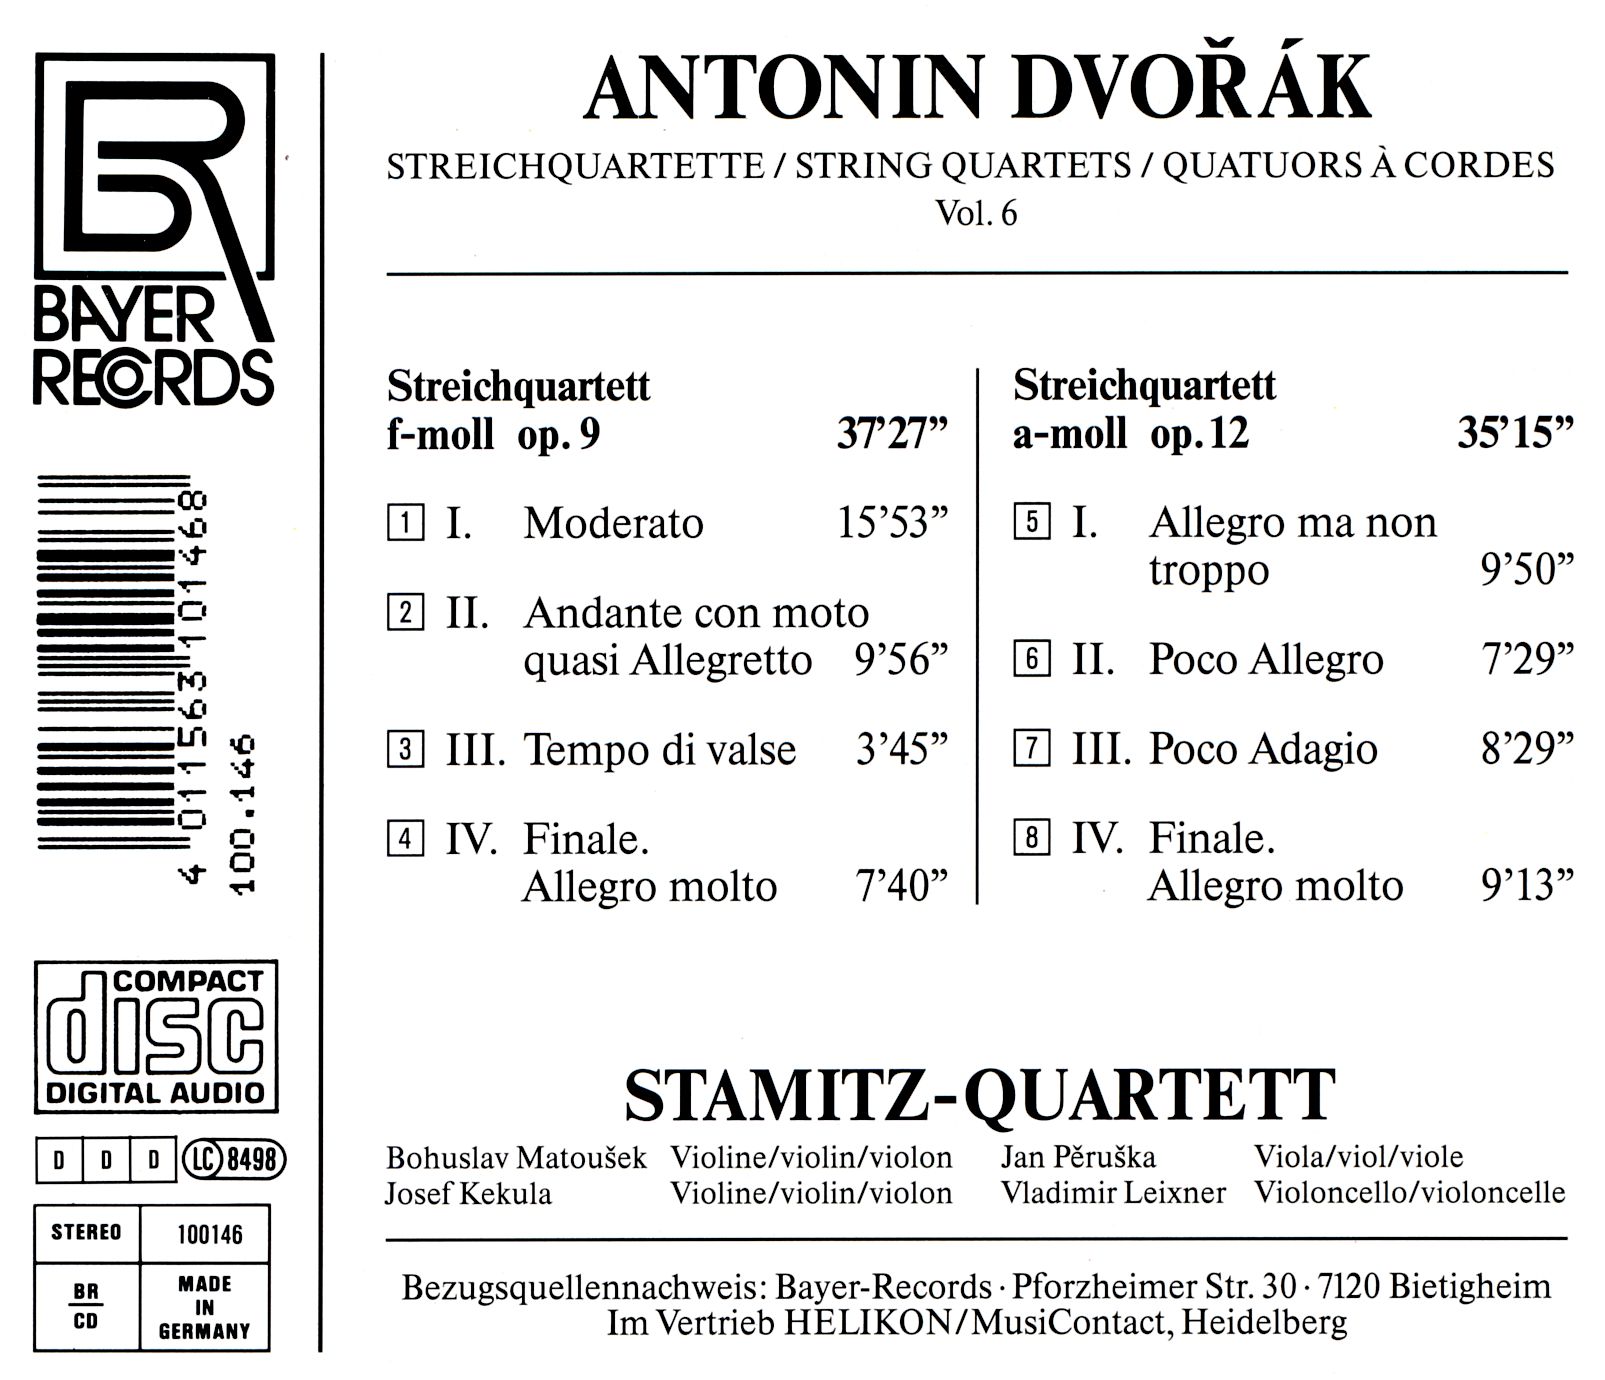 Antonin Dvorak - Streichquartette Vol.6